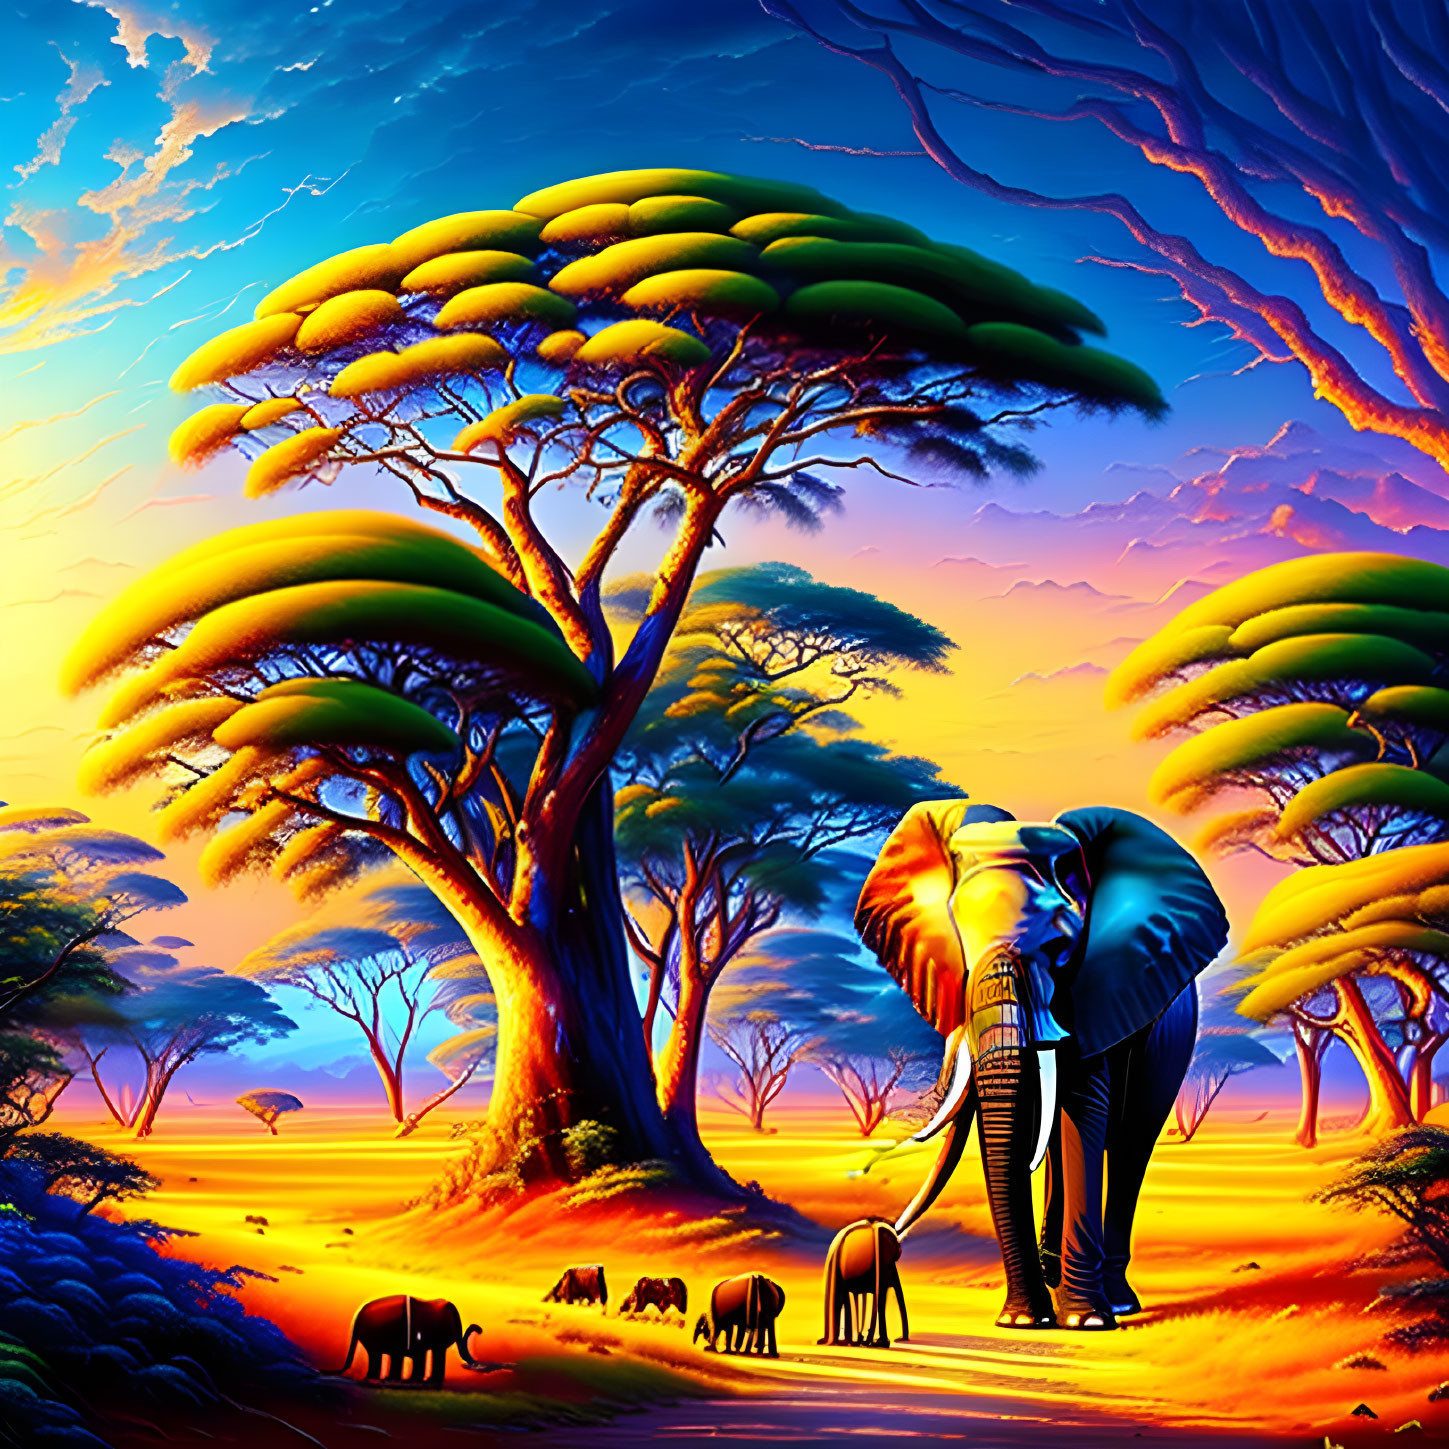 Colorful digital artwork: Elephants in vivid African savannah scene